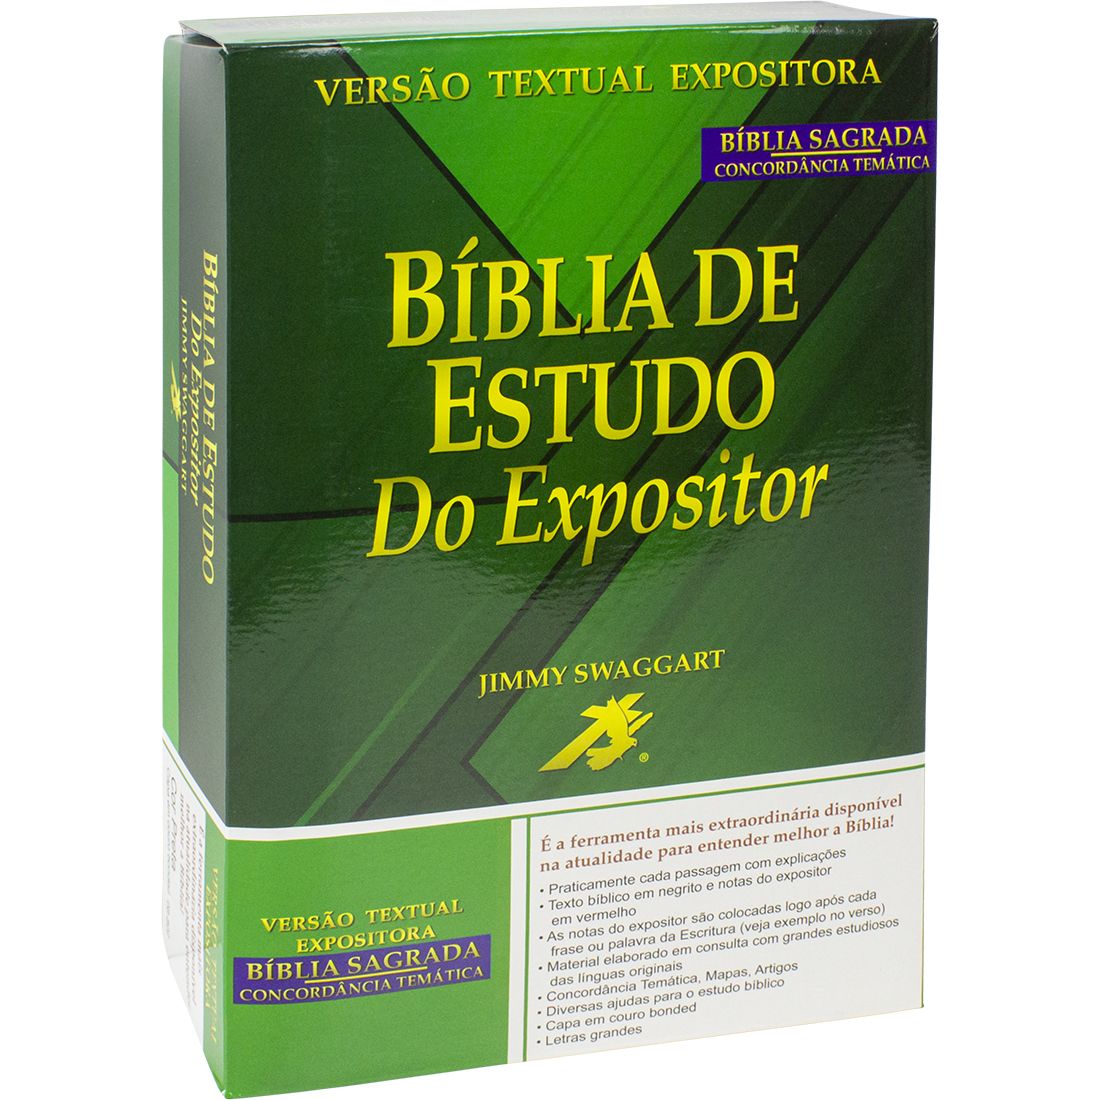 Bíblia de Estudo do Expositor - Capa couro bounded preta: Nova Versão Textual Expositora